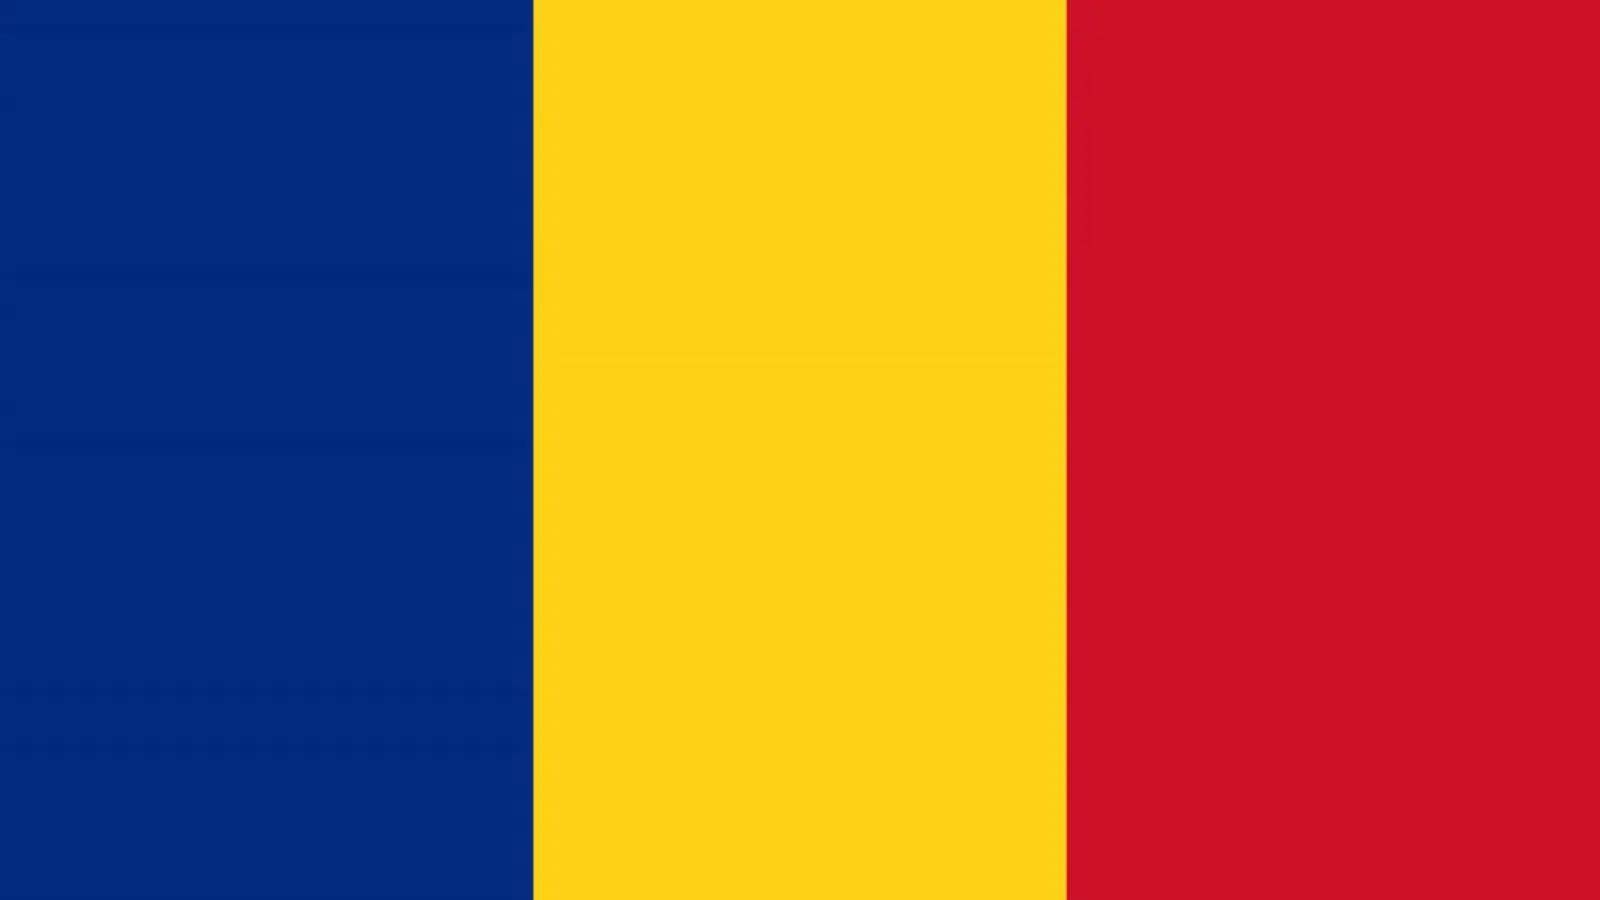 DSU Romania Misure IMPORTANTI annunciate al Paese rumeno